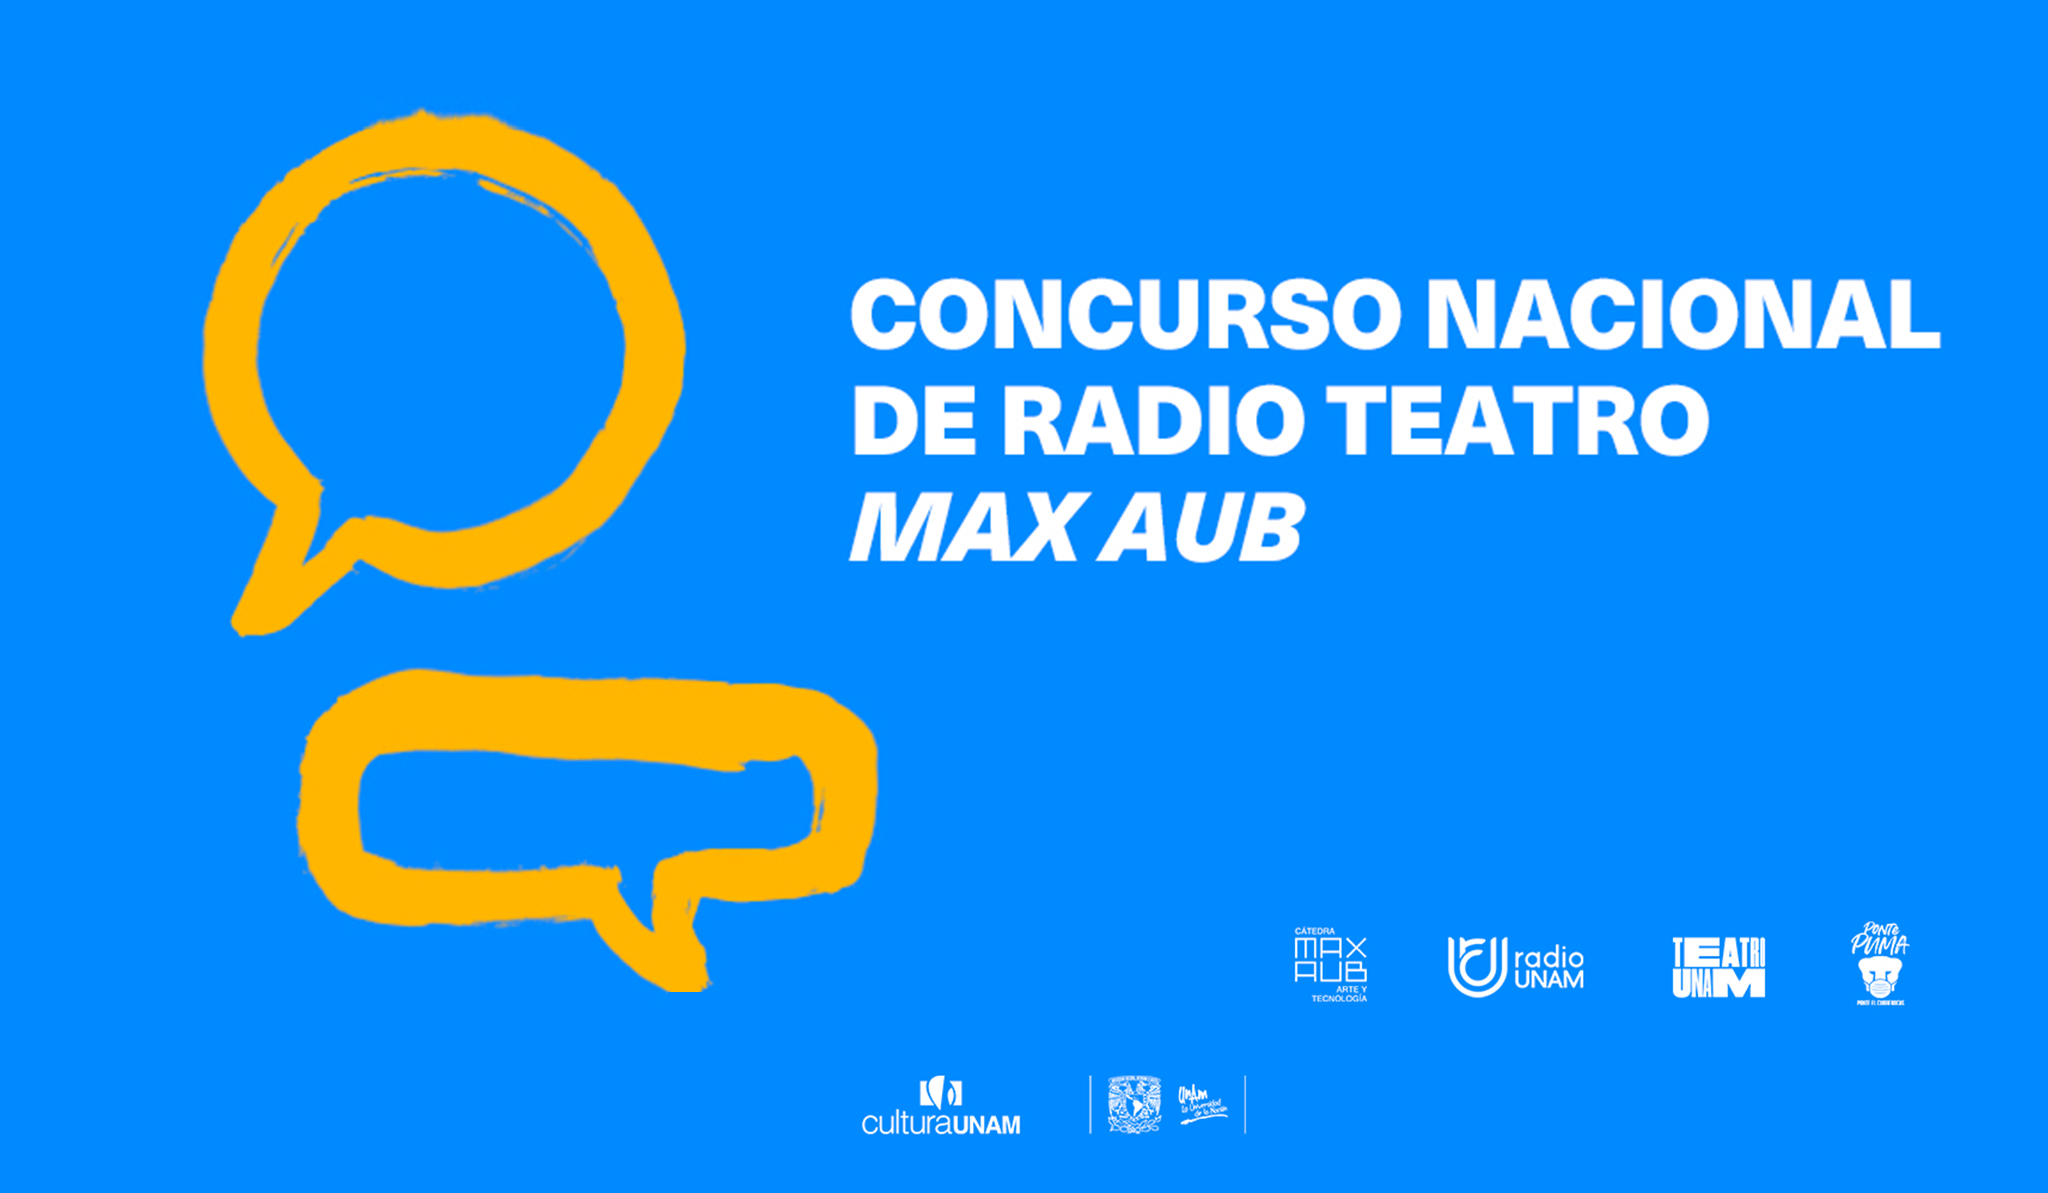 CONCURSO NACIONAL DE RADIOTEATRO MAX AUB